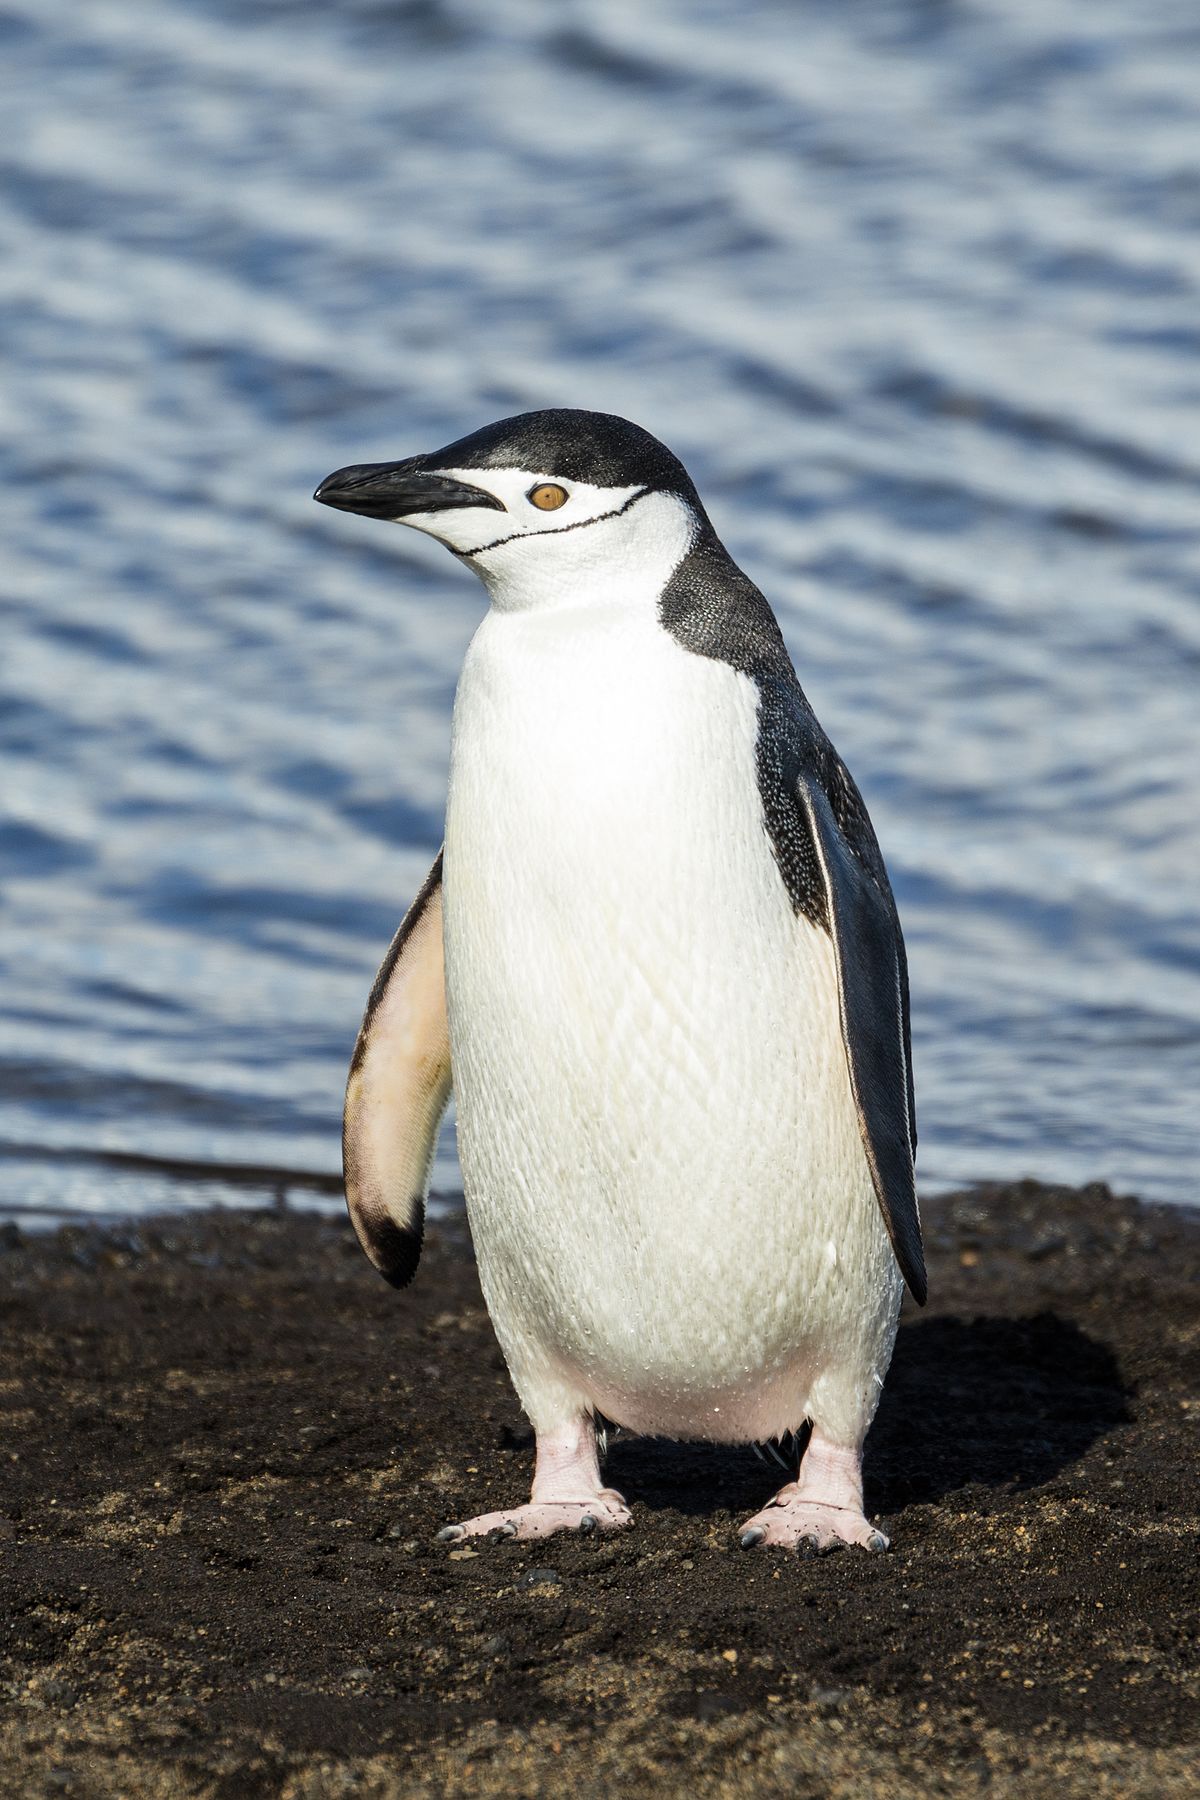 Chú chim cánh cụt đứng trên mặt đất với khuôn mặt ngu ngu